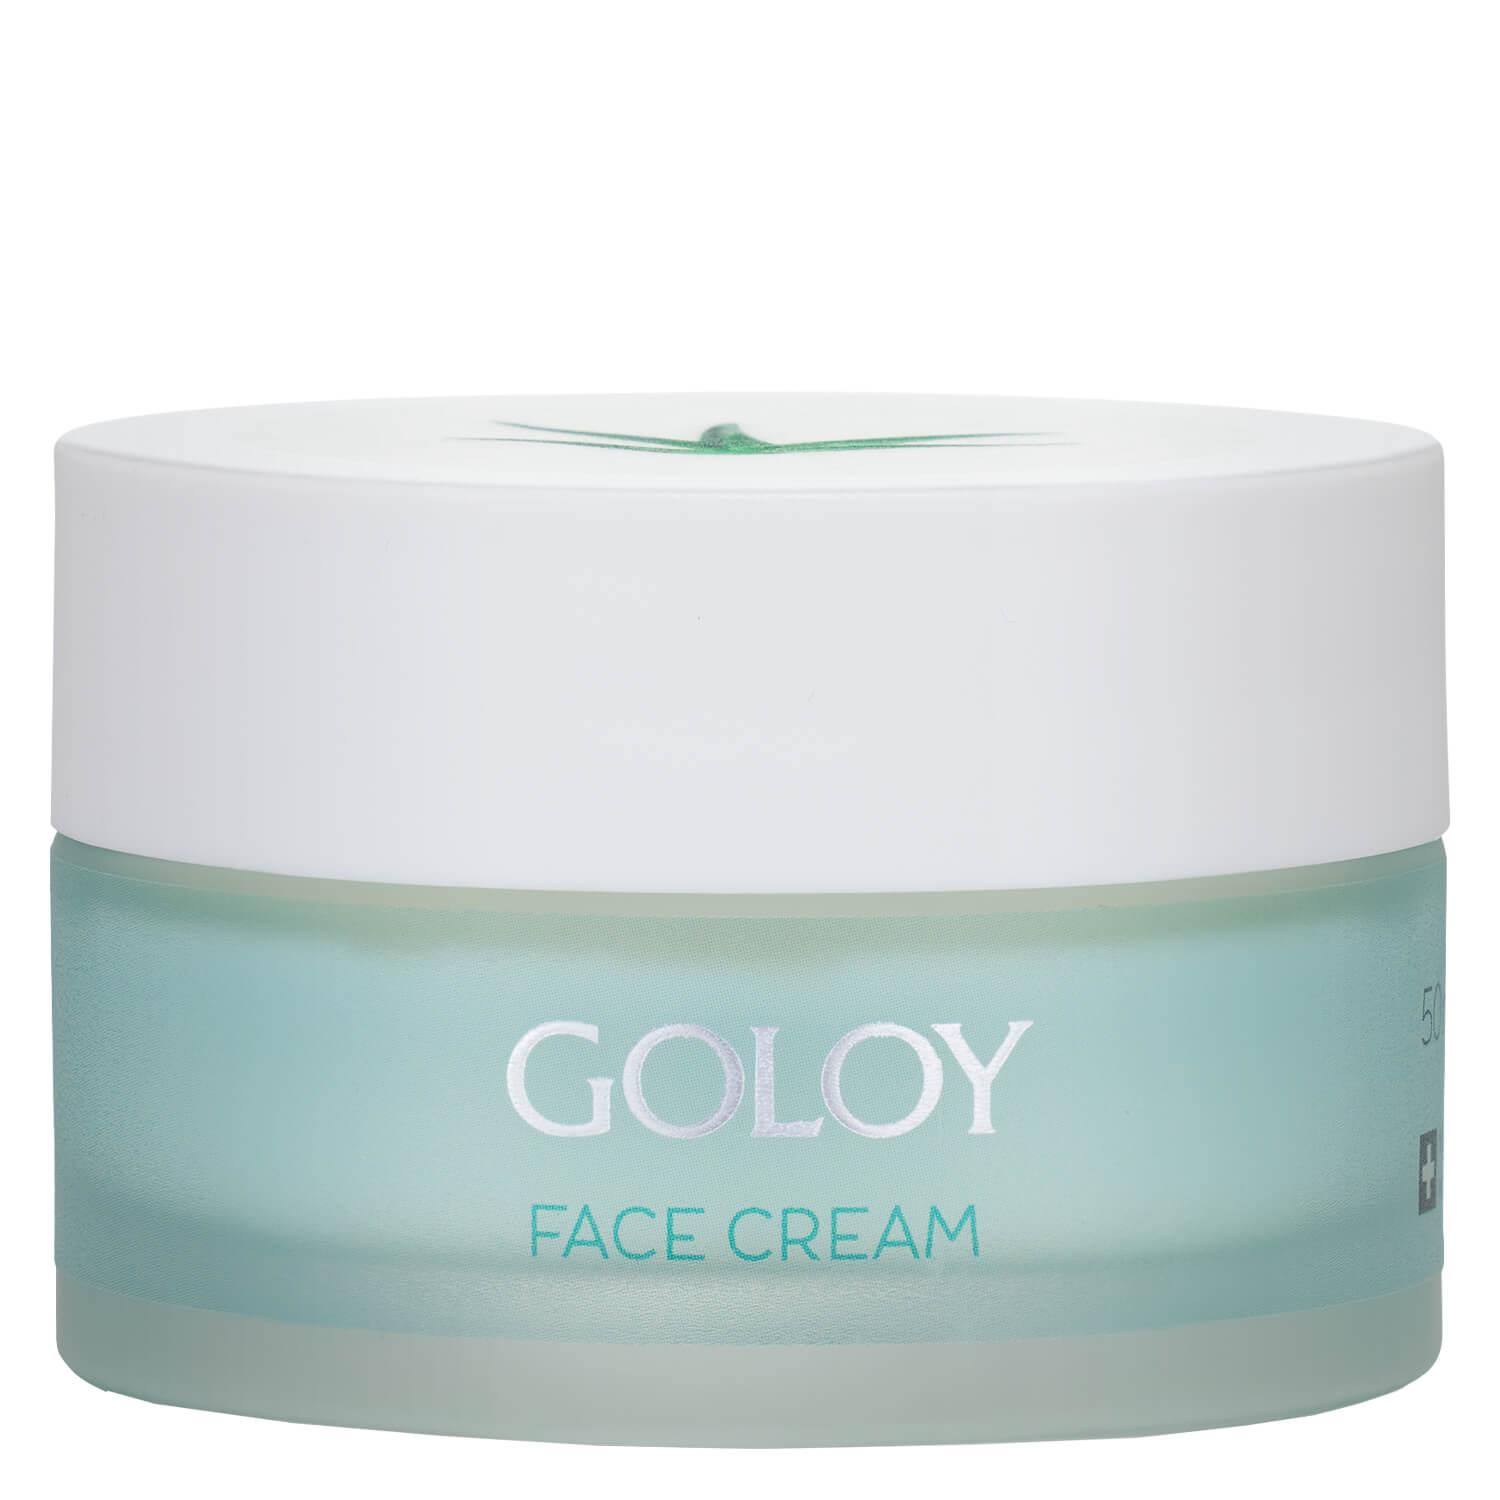 GOLOY - Face Cream